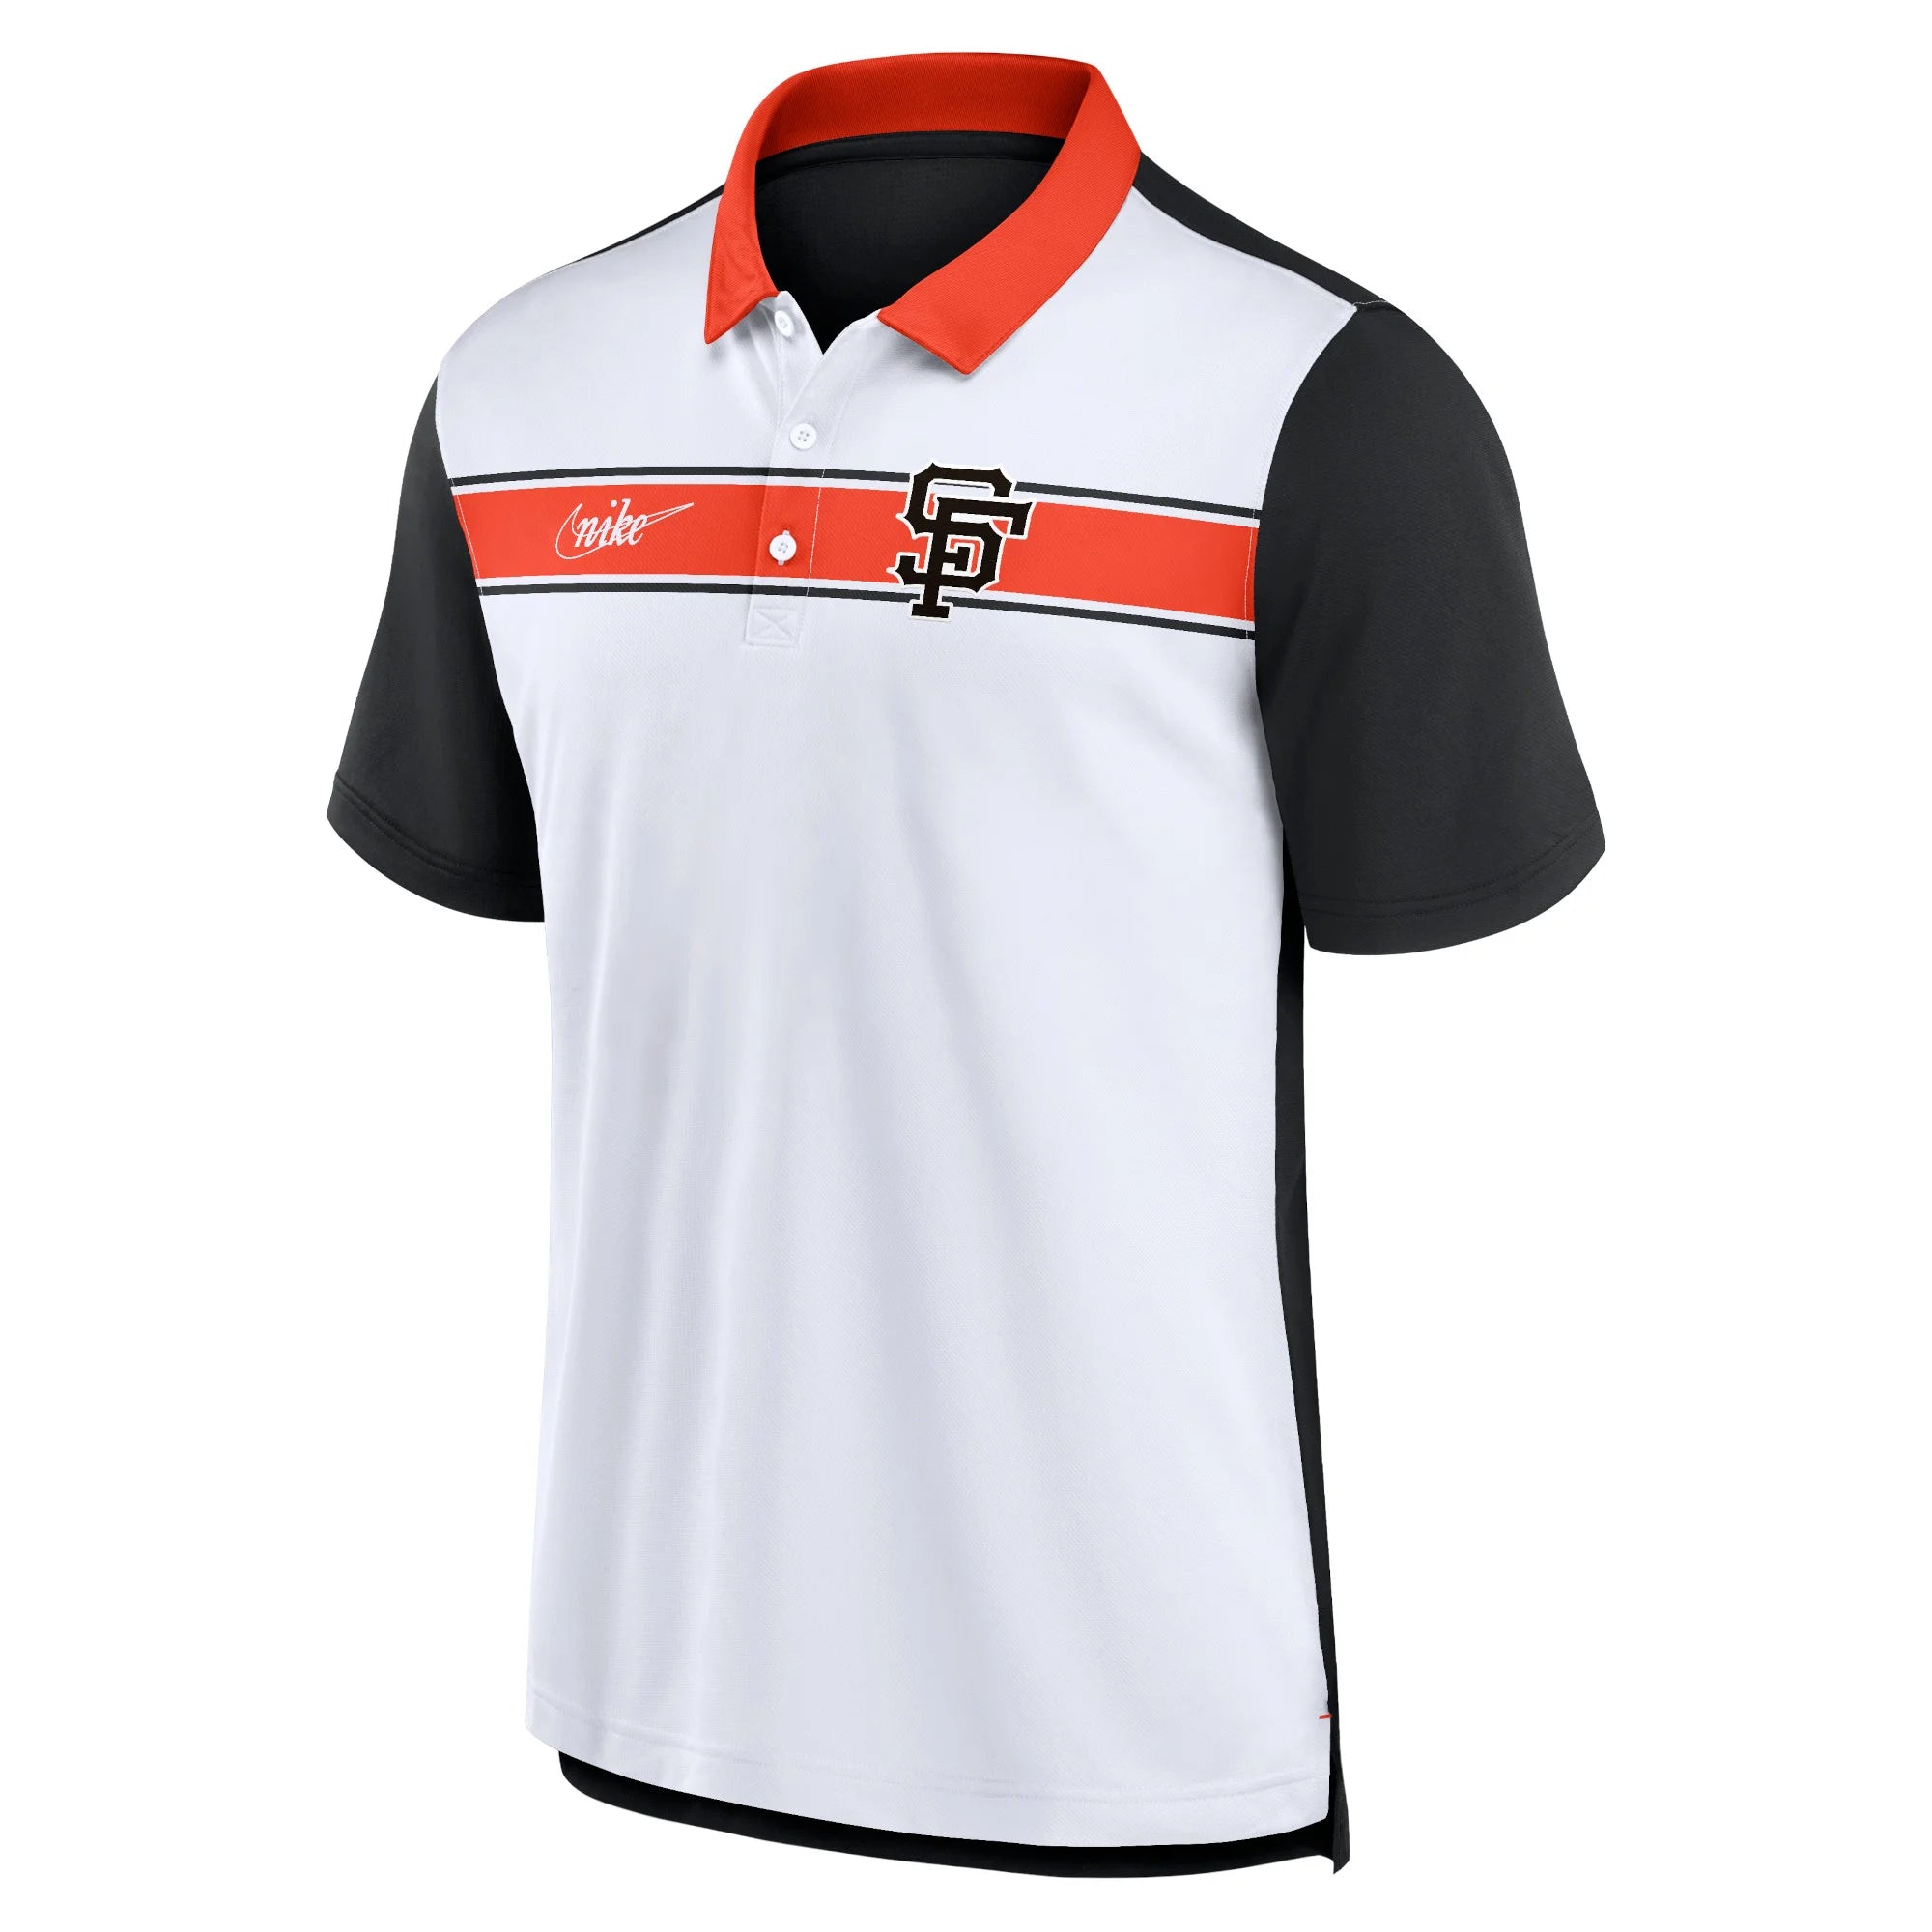 Nike Men's San Francisco Giants Rewind Stripe Polo Shirt - White/Black